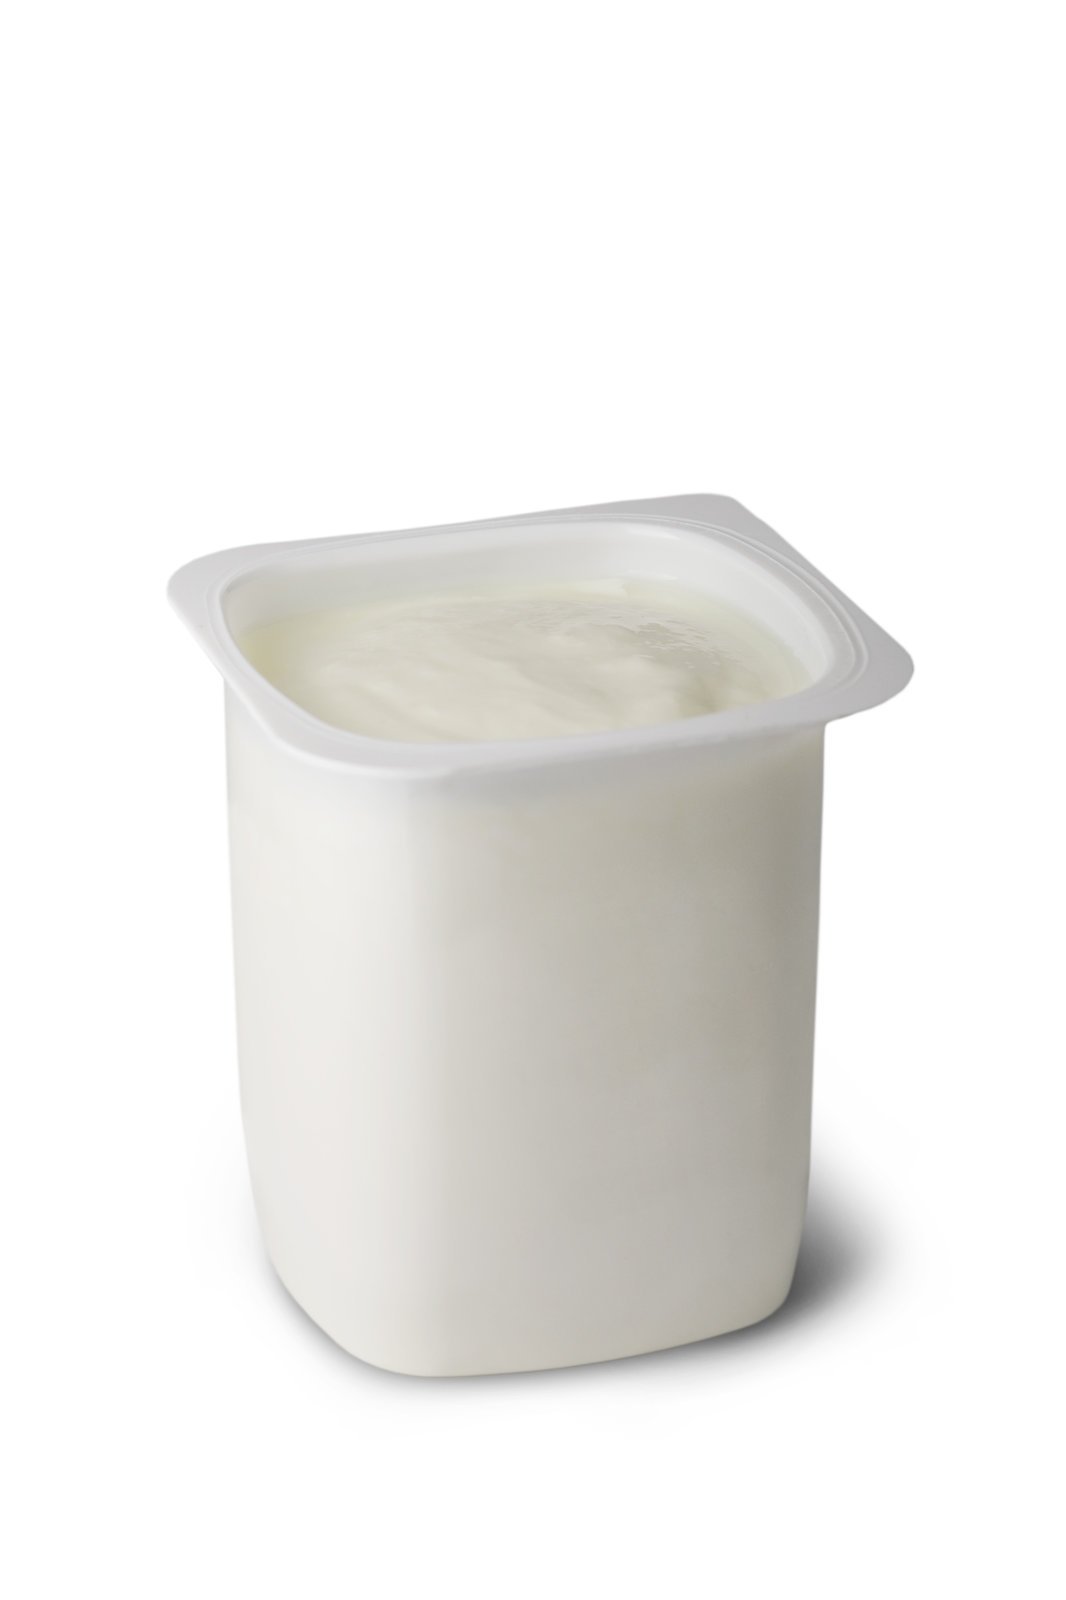 Balzám na rty – jogurt Proti popraskaným rtům nemusíte hned kupovat drahé balzámy. Lžičku medu smíchejte s plnotučným jogurtem a naneste na rty. Po minutě olízněte.